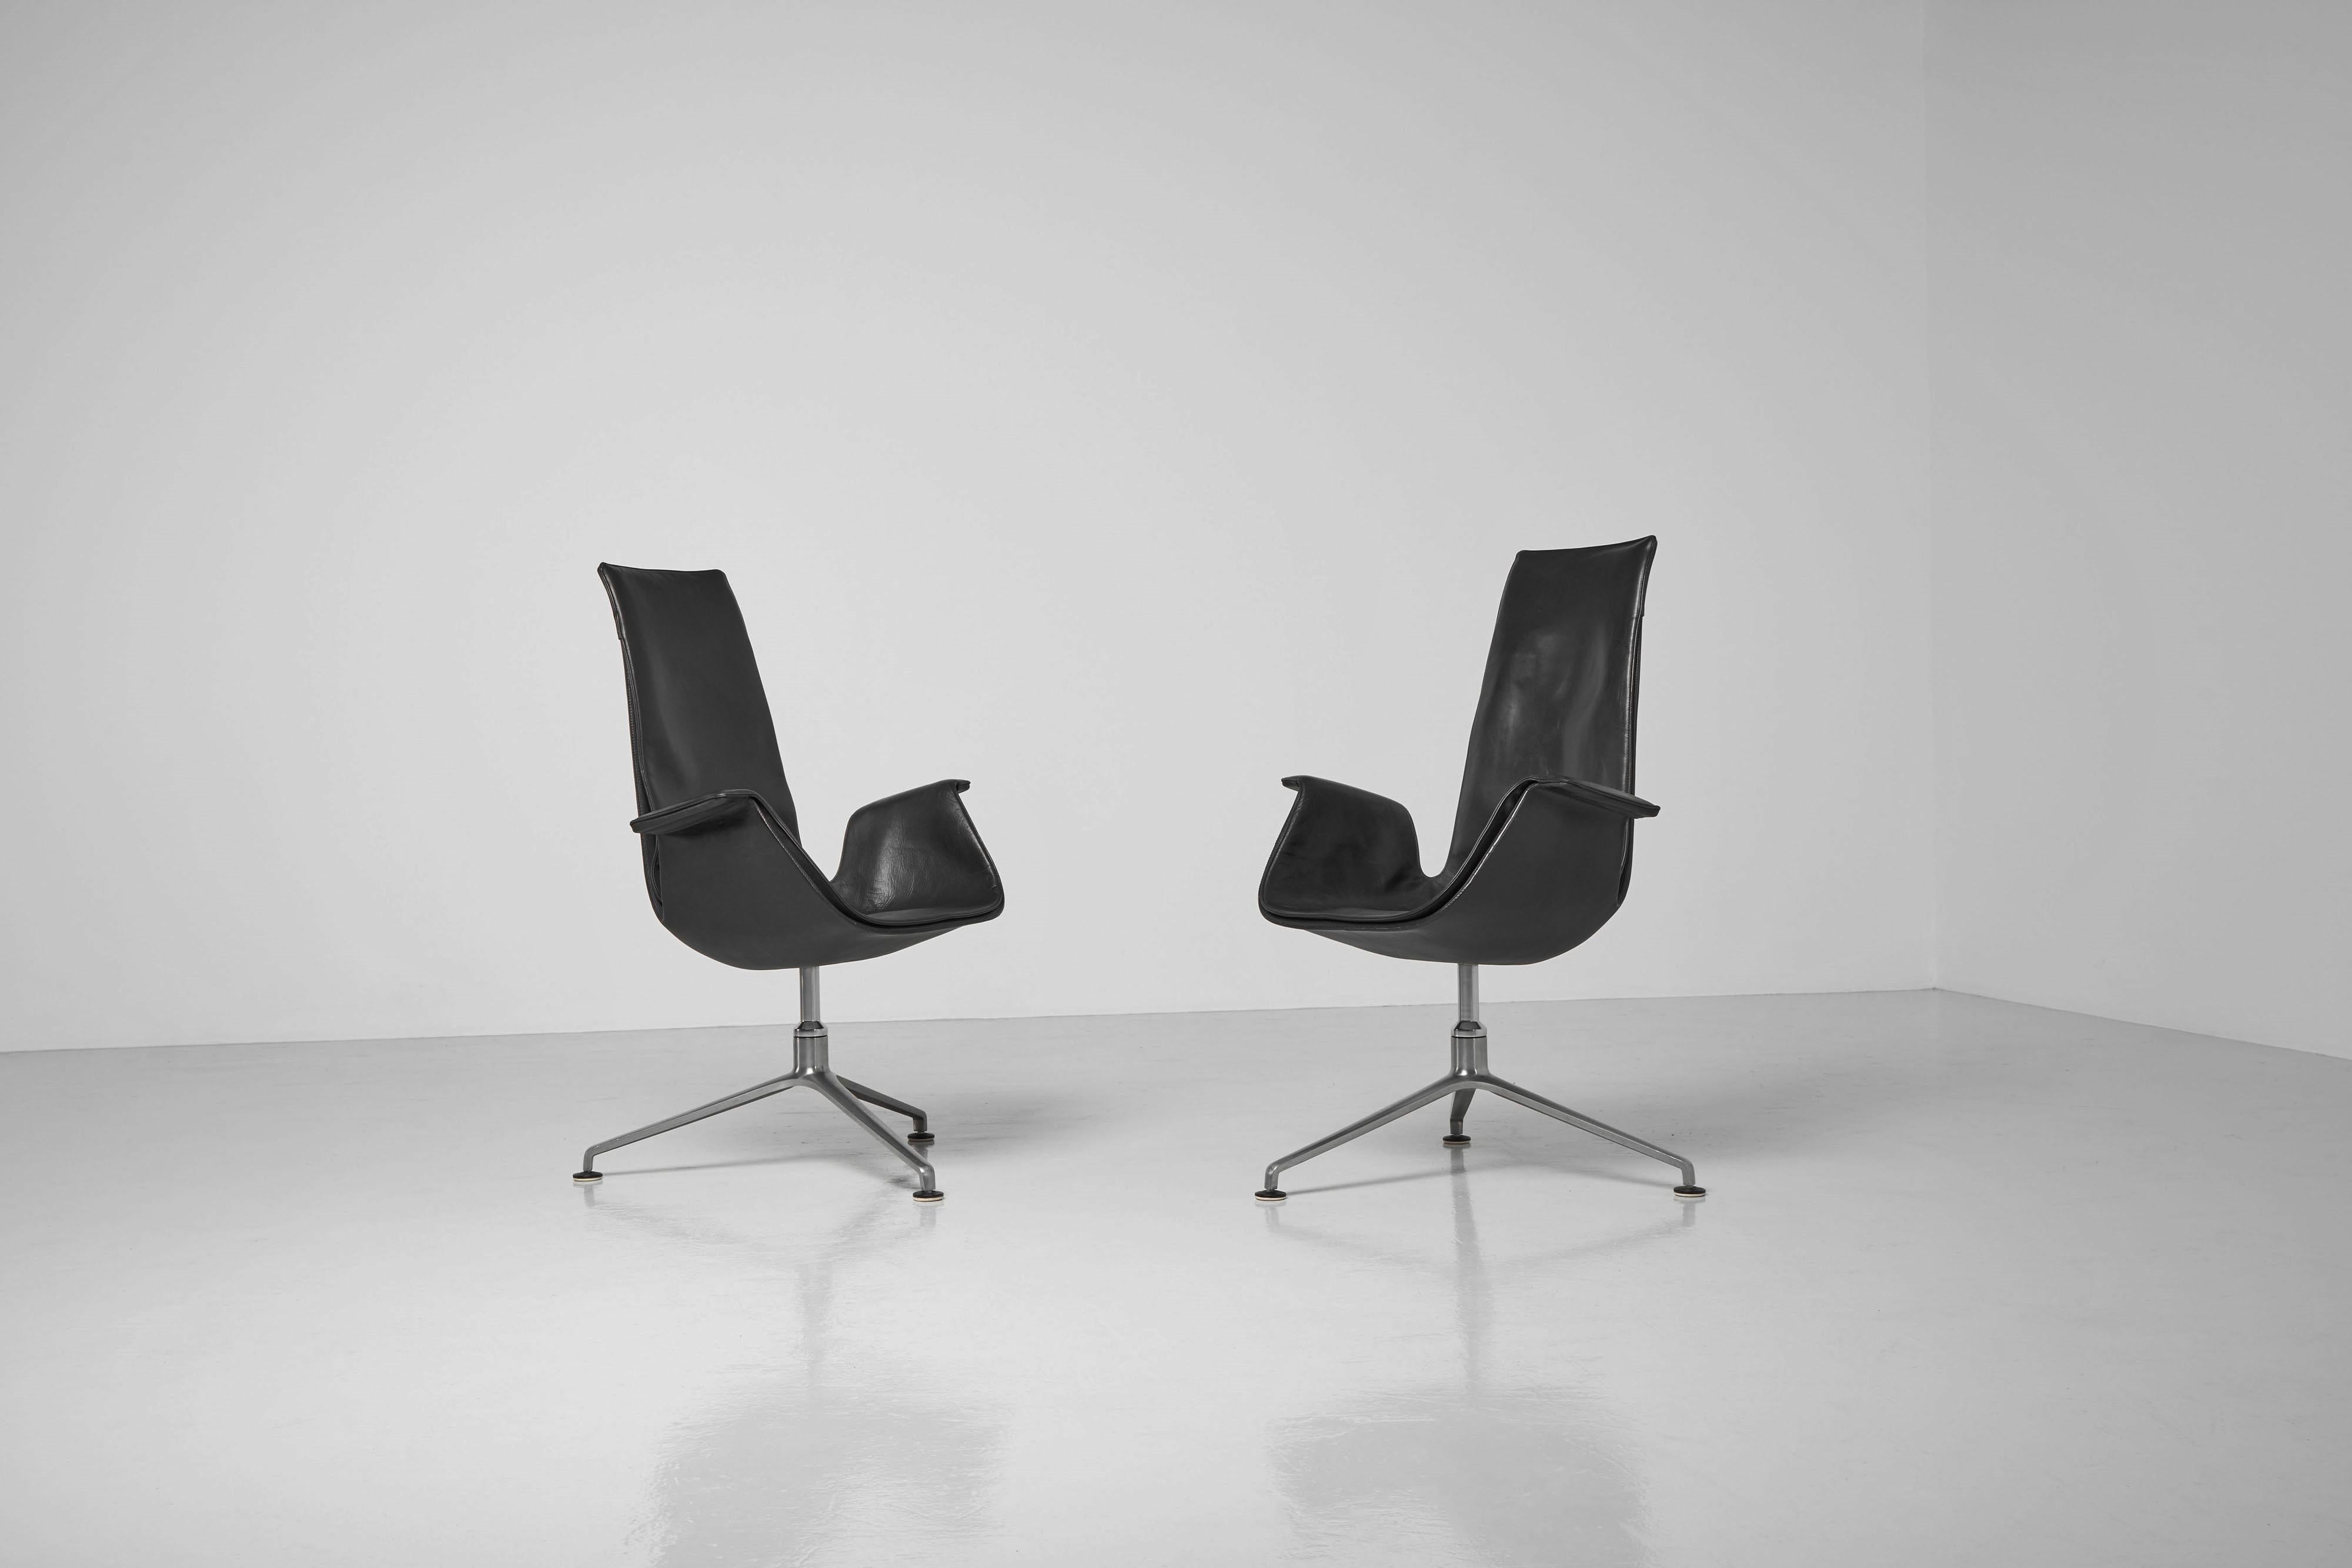 Super großer Satz Konferenzstühle mit hoher Rückenlehne, Modell FK6725, entworfen von Preben Fabricius und Jorgen Kastholm und hergestellt von Kill International, Deutschland 1964. Diese sogenannten Vogelstühle haben ihre originalen schwarzen